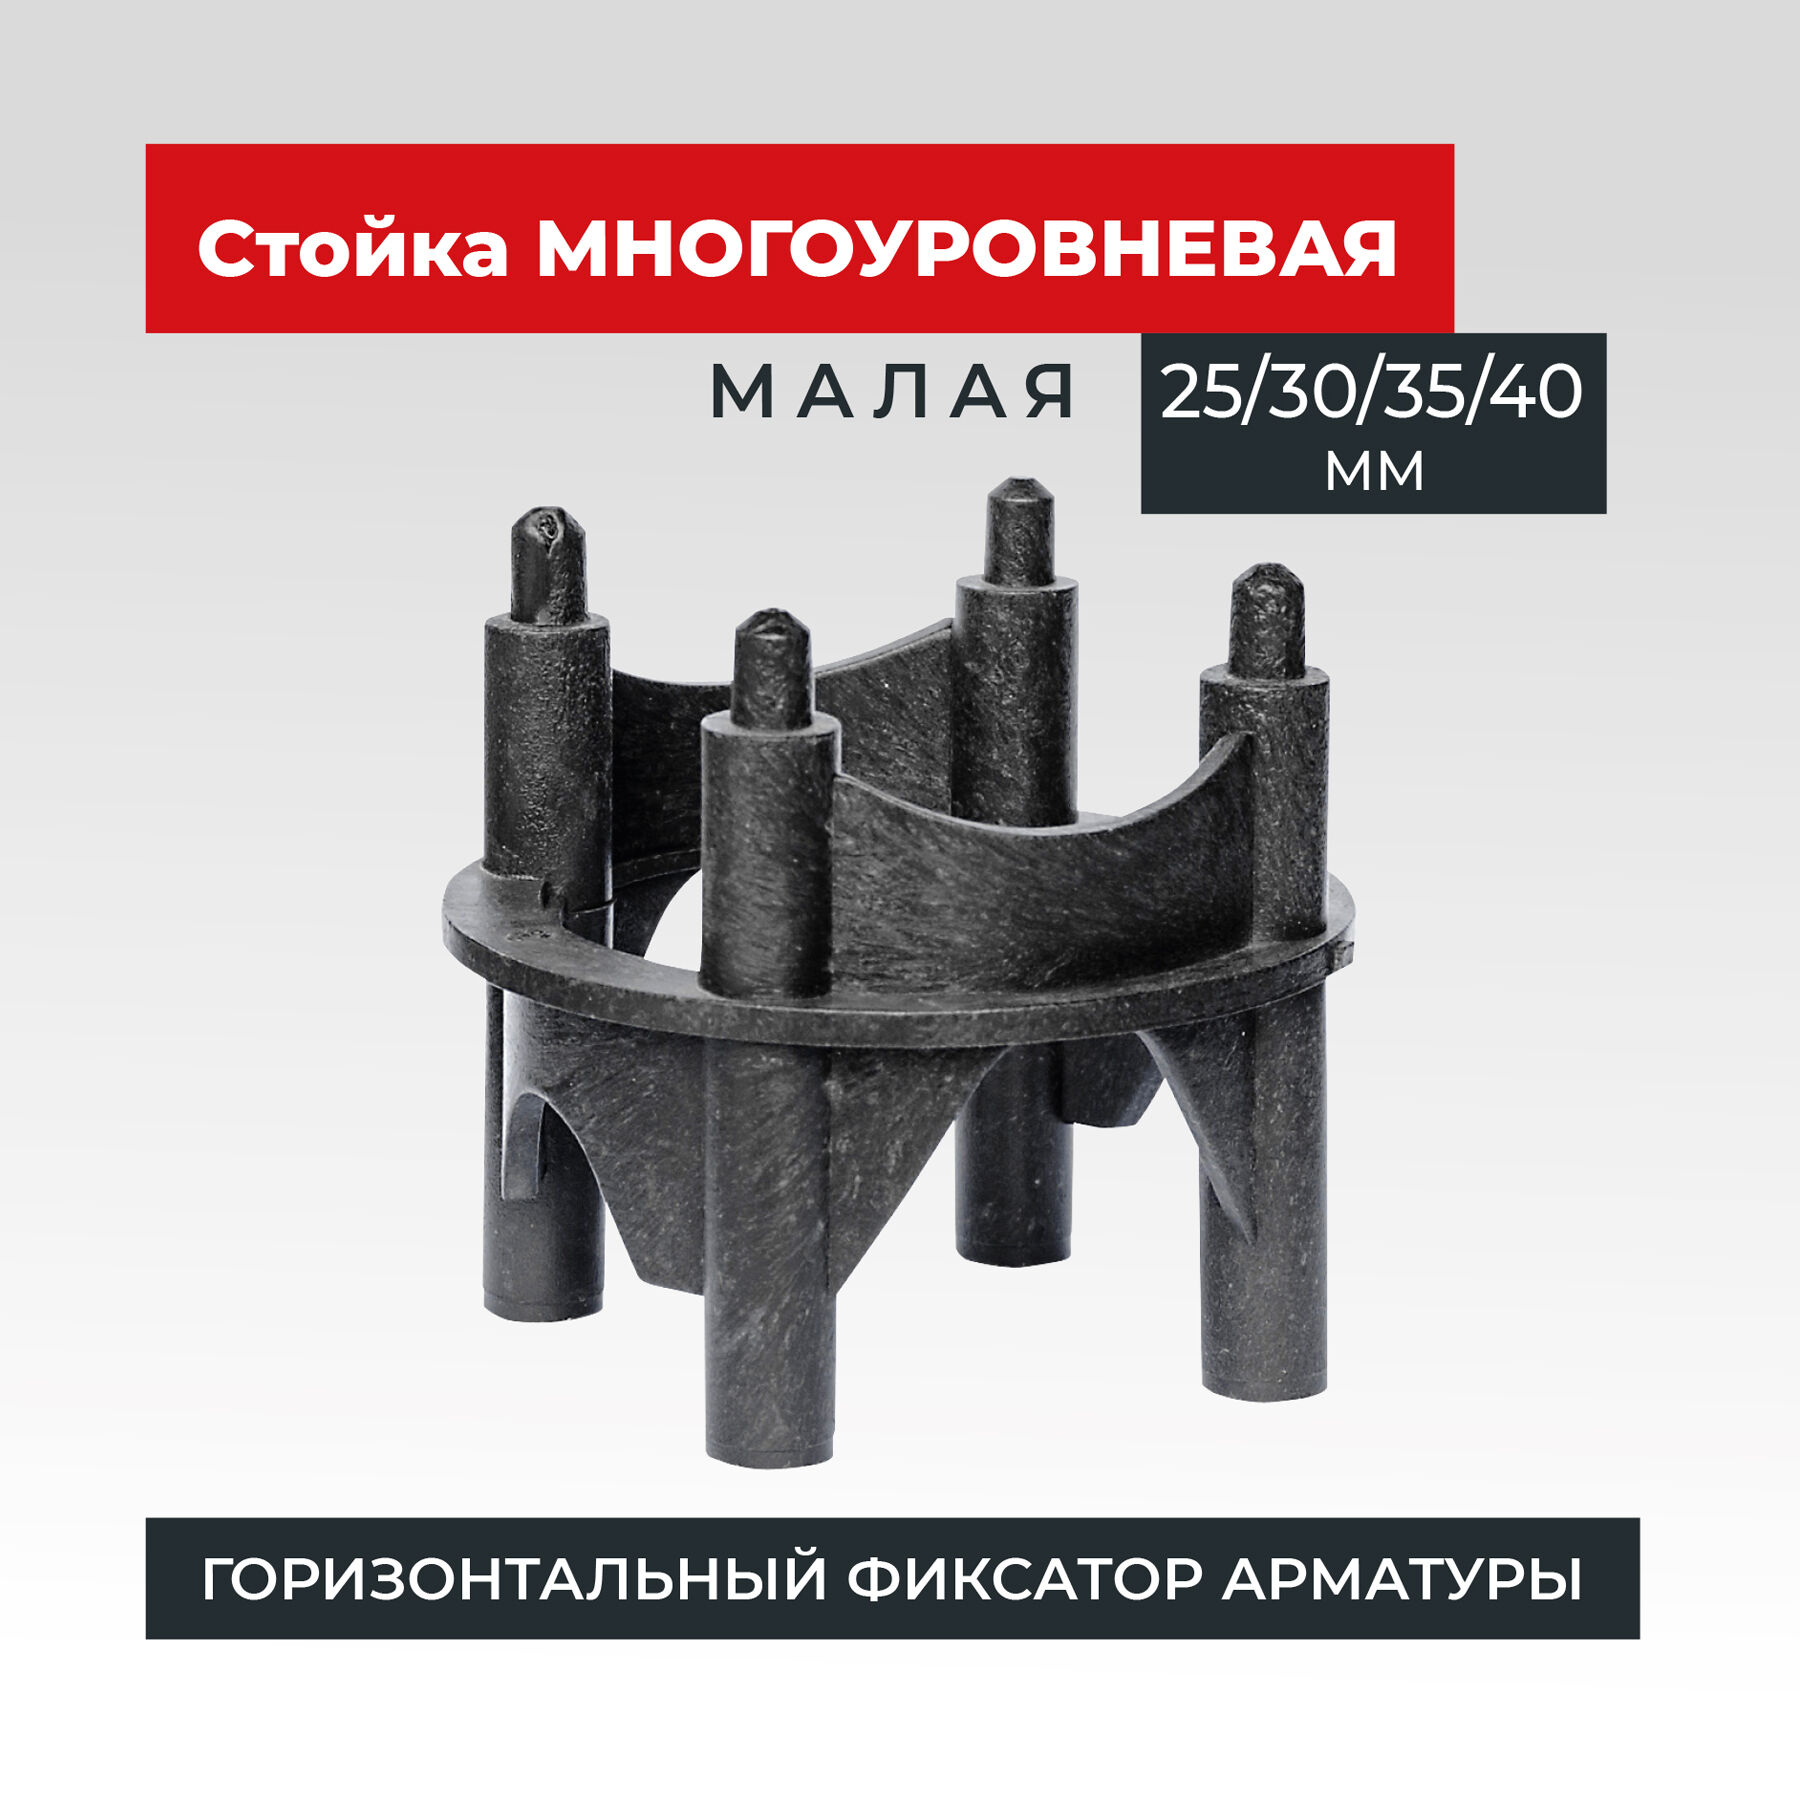 Фиксатор арматуры Промышленник многоуровневый 25/30/35/40 упаковка 250 шт.